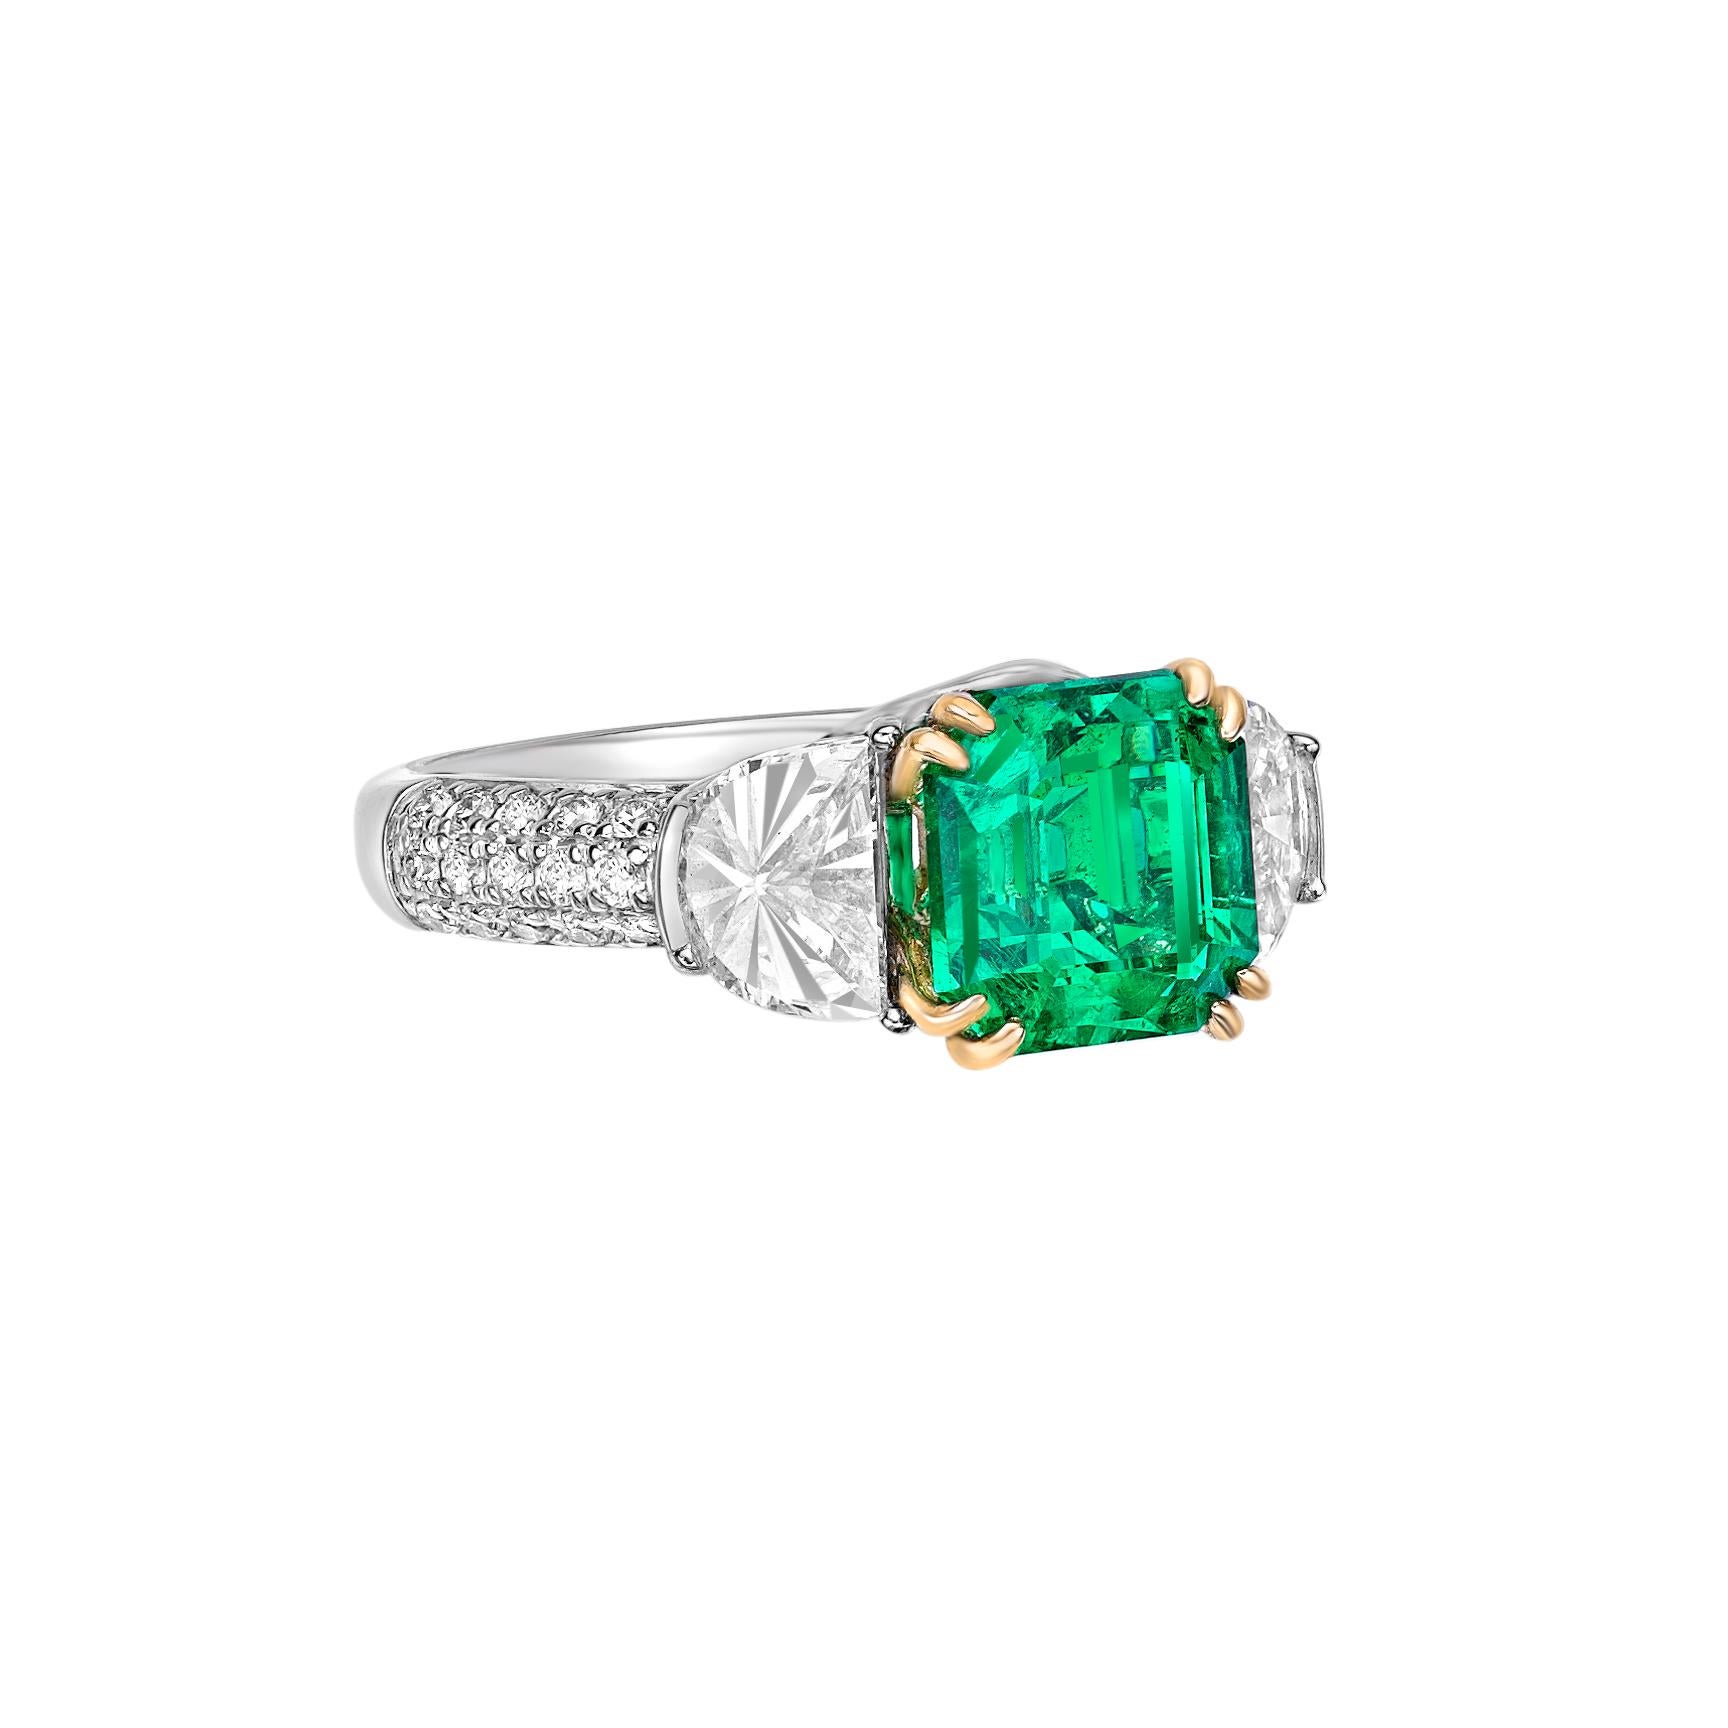 Präsentieren Sie einen wunderschönen Ring mit zwei halbmondförmigen Diamanten auf beiden Seiten des zentralen Steins, der Ihre Eleganz und Anmut unterstreicht. Modernes Design und klassische Schönheit sind in diesem atemberaubenden Kunstwerk